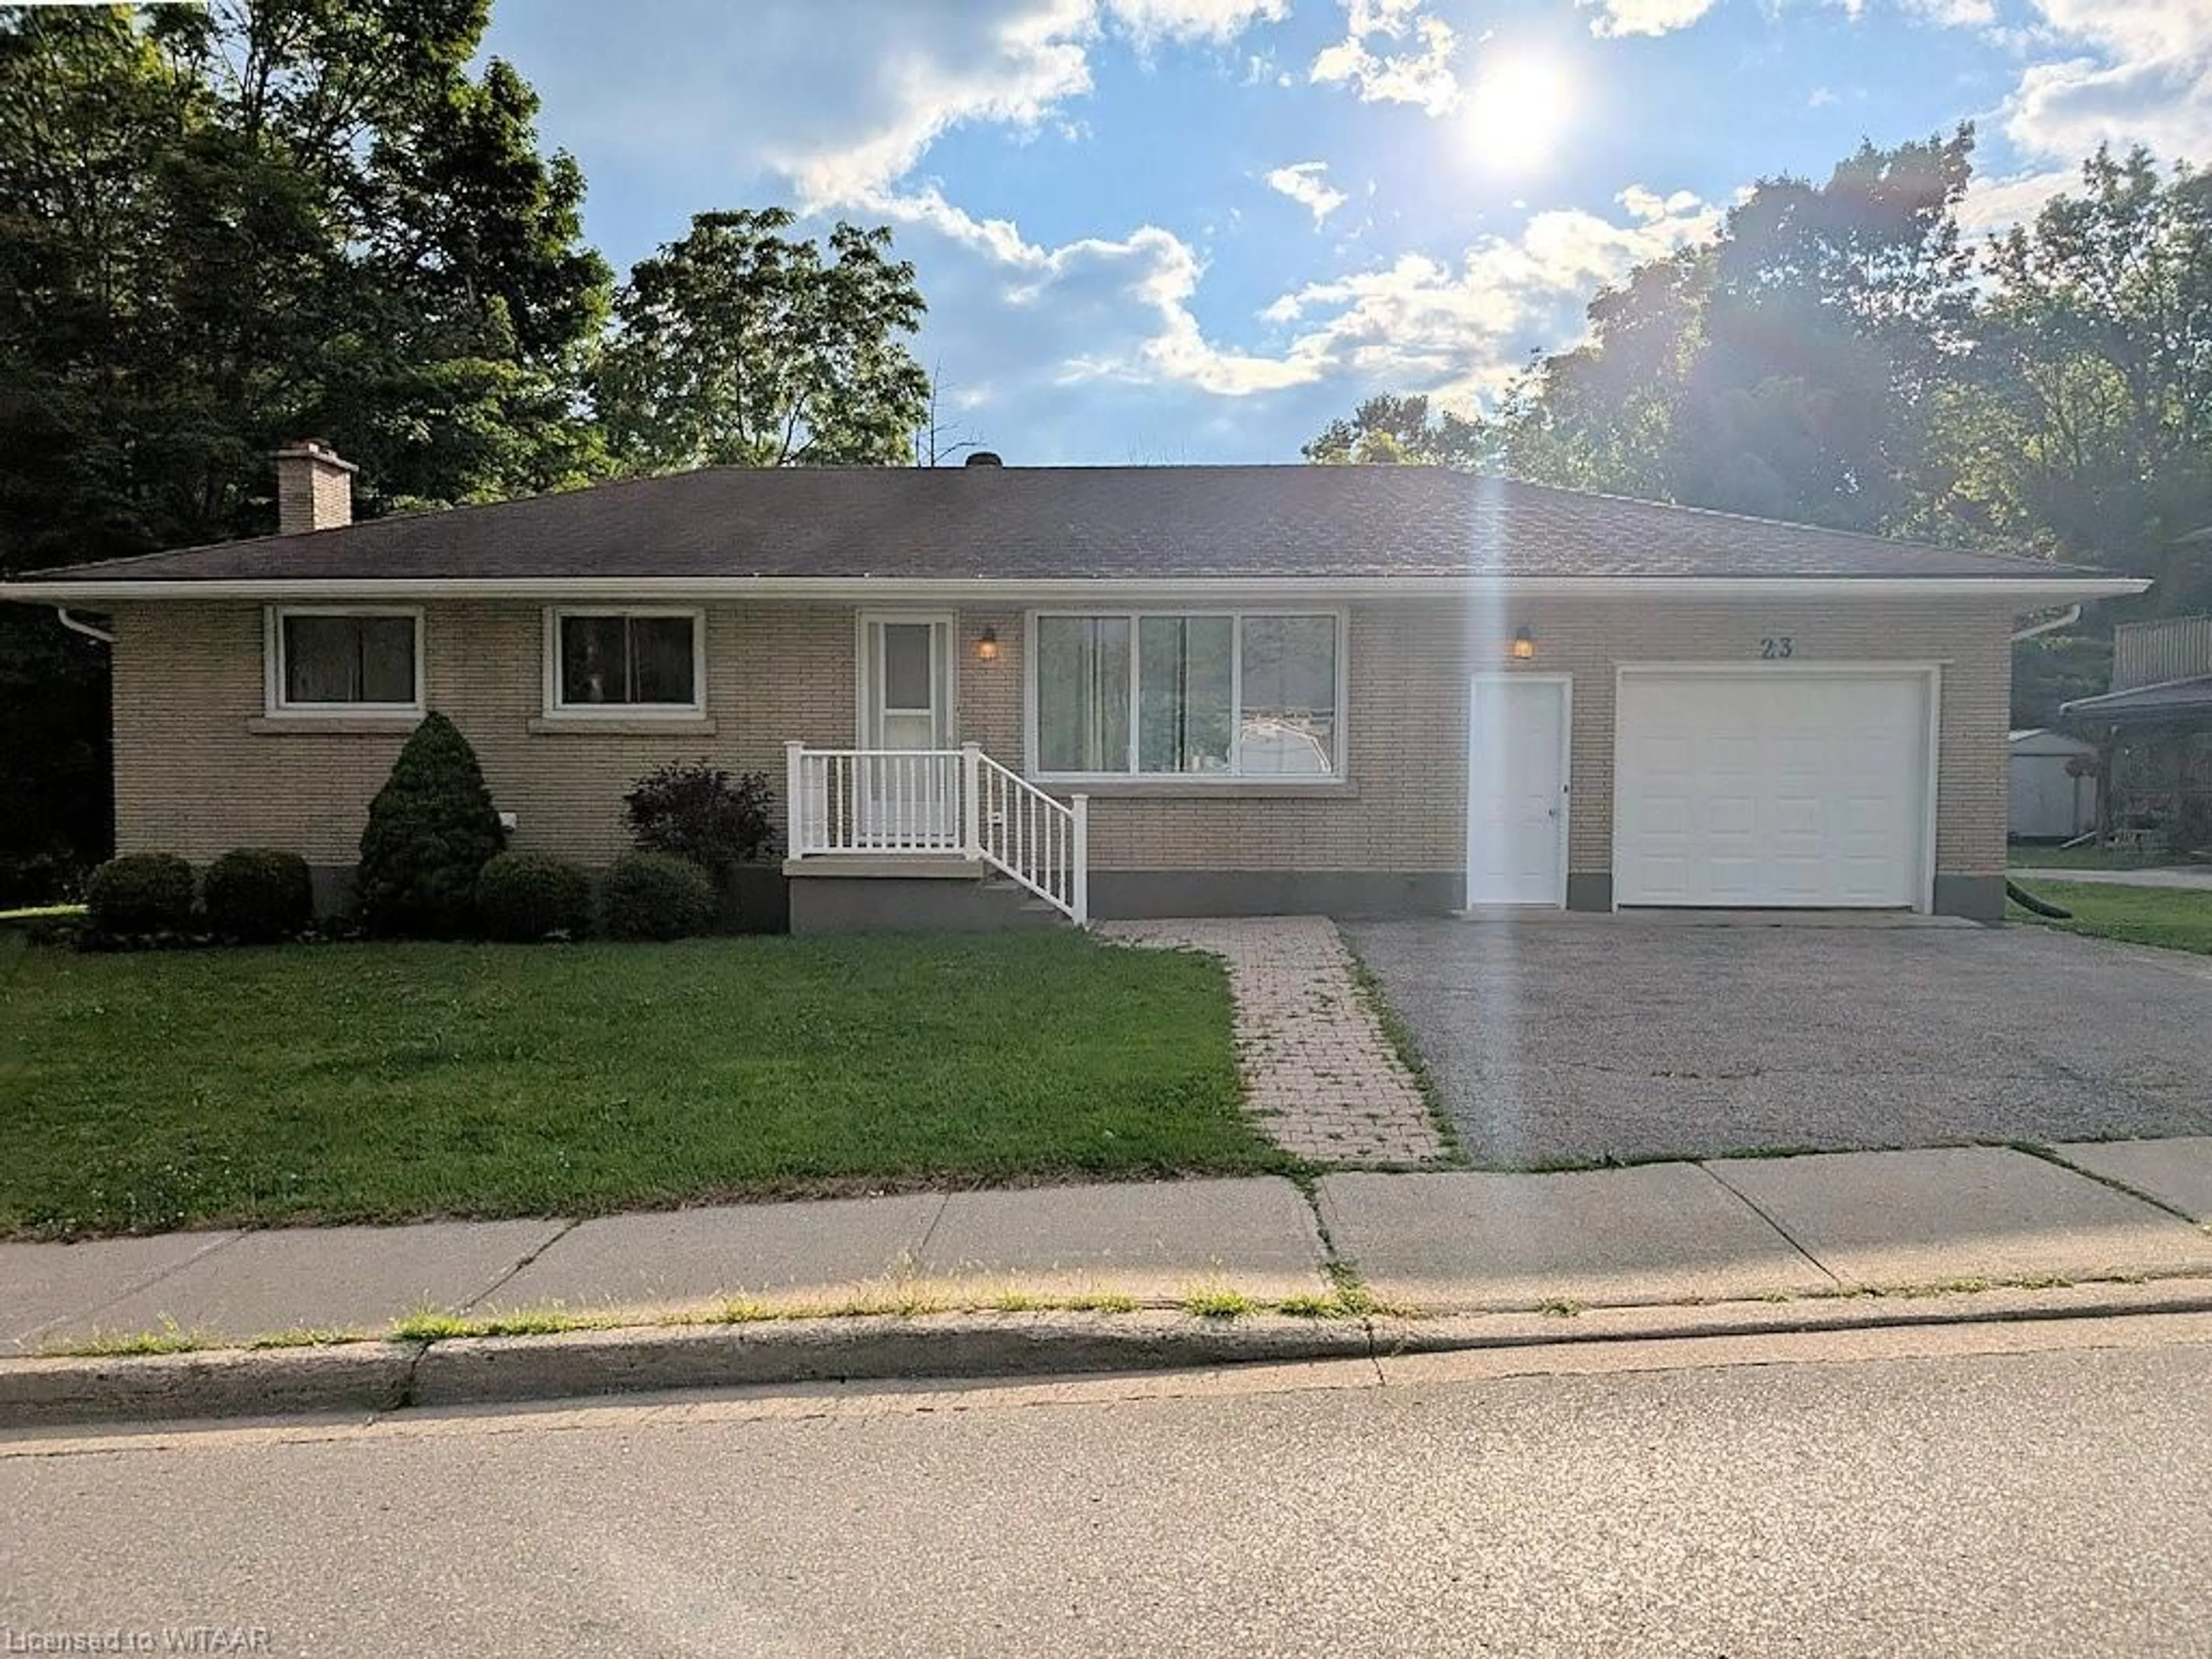 Frontside or backside of a home for 23 Tillson Ave, Tillsonburg Ontario N4G 2Z7